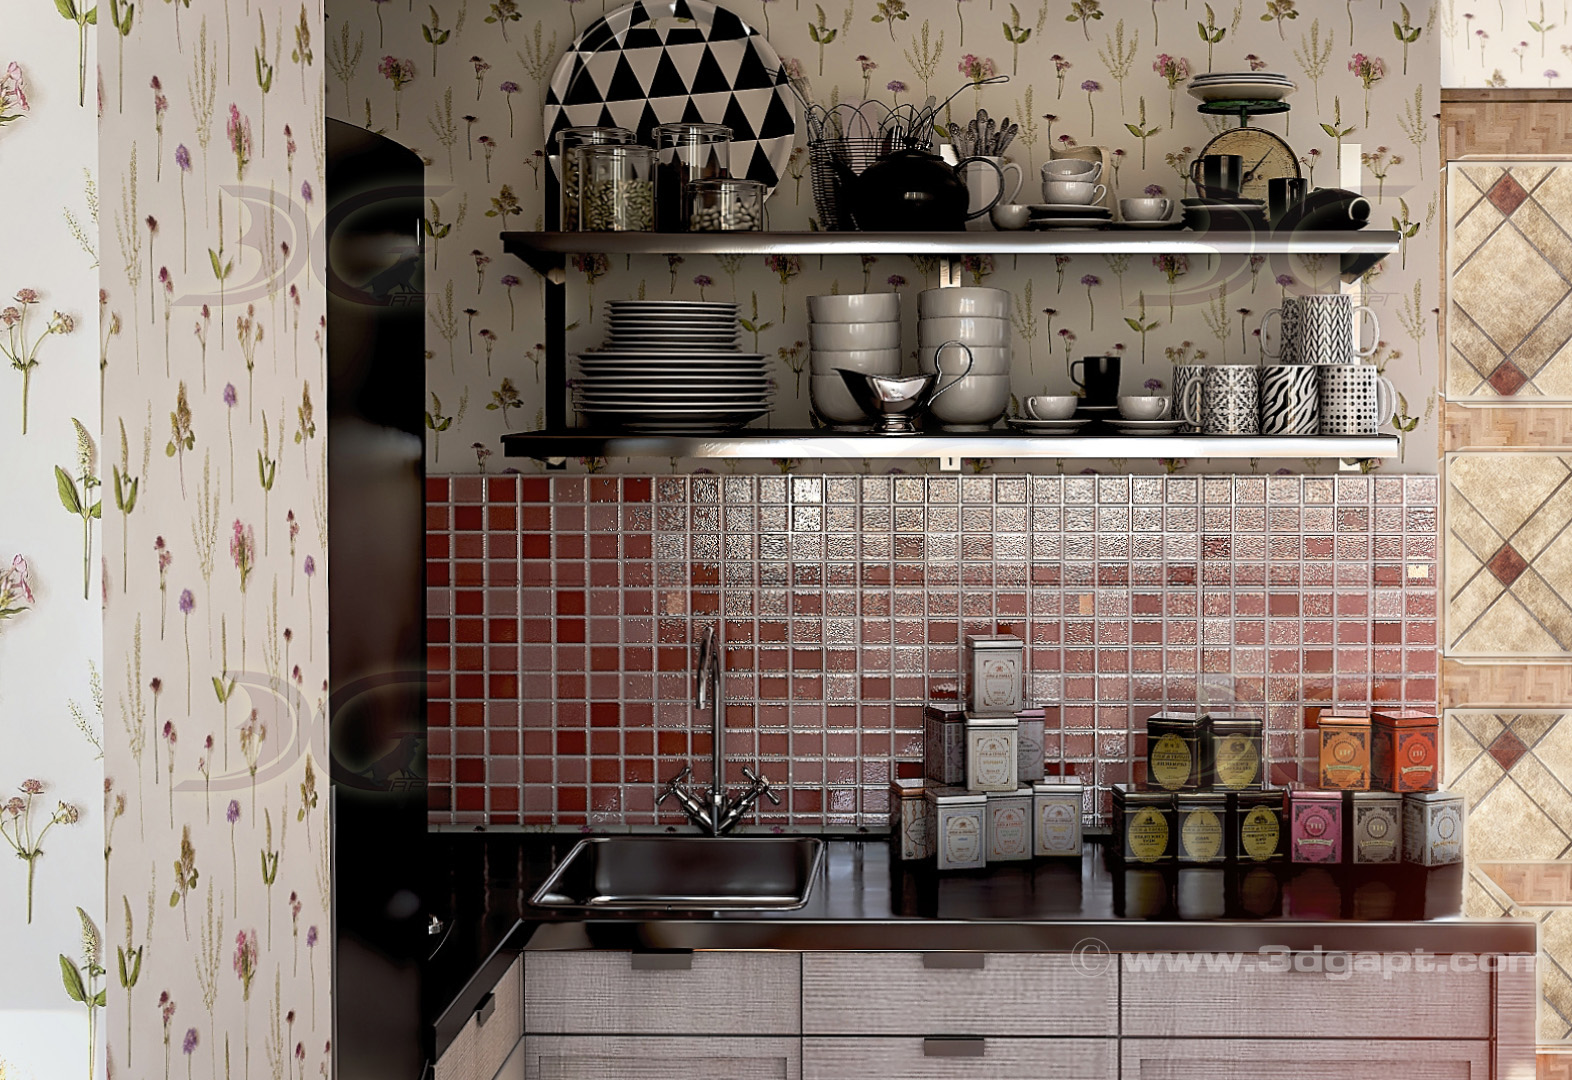 architecture interior kitchen-2versions 006